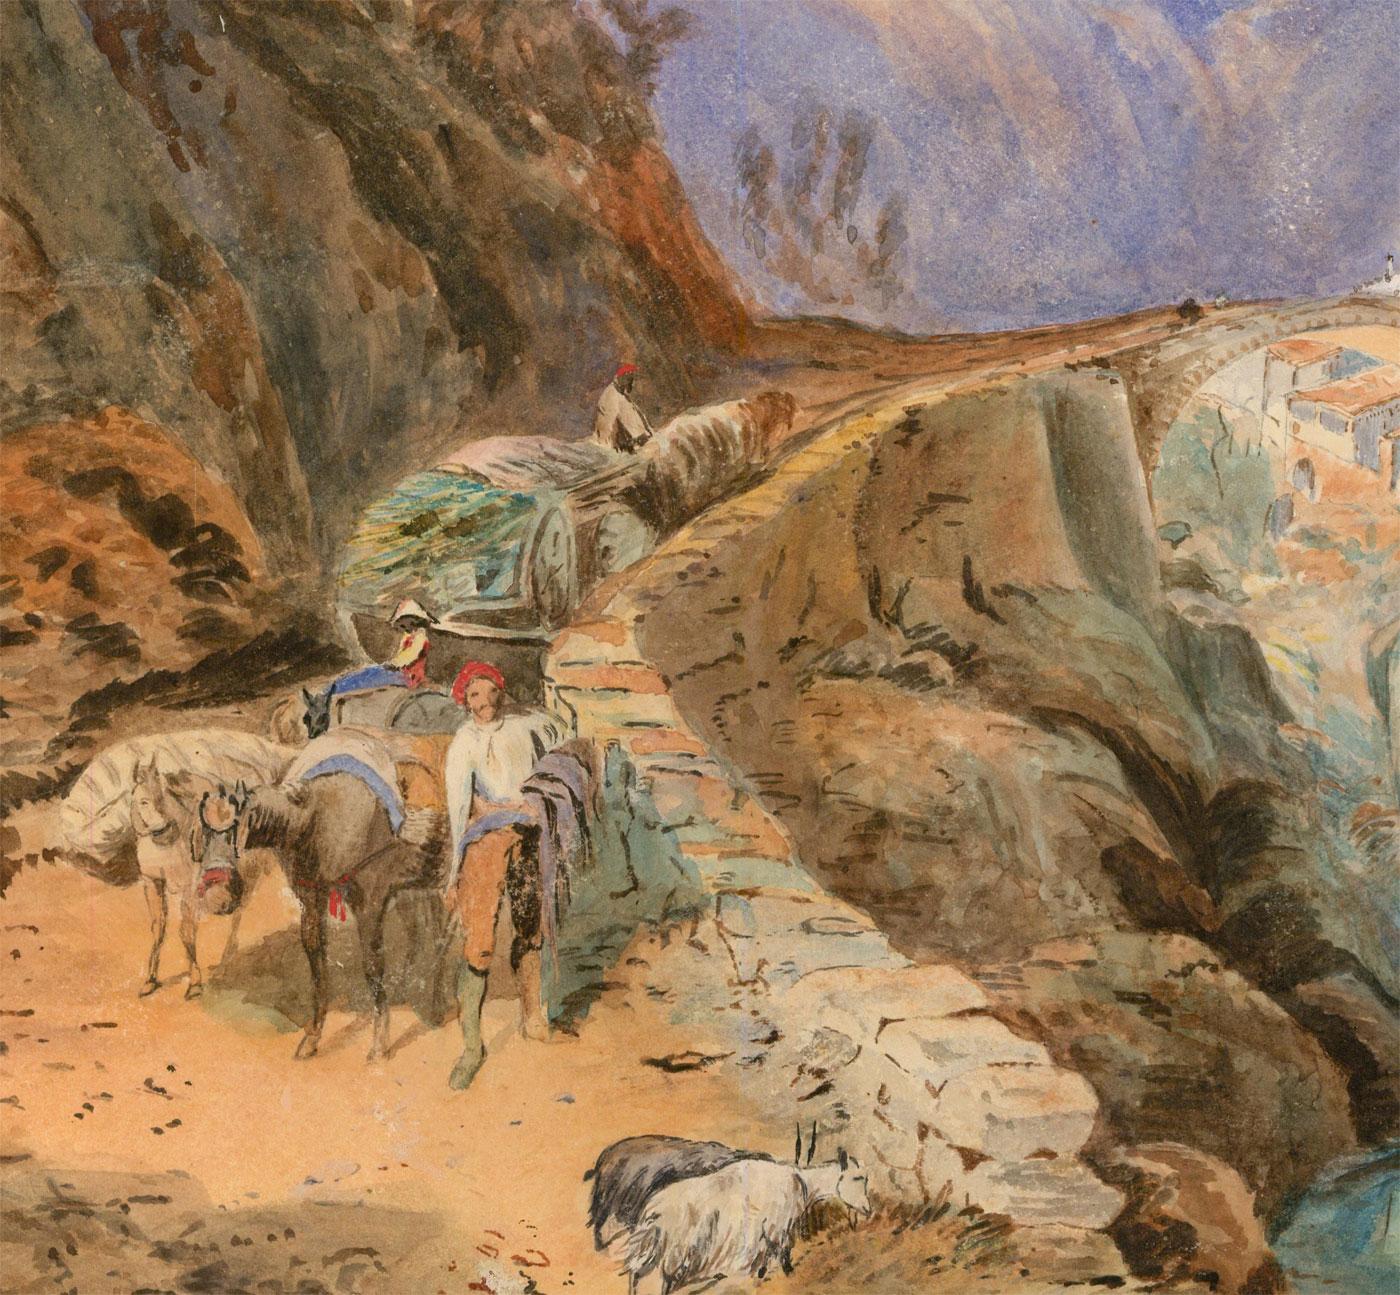 Ein detailreiches Aquarell aus dem 19. Jahrhundert, das eine italienische Bergstadt oder ein italienisches Bergdorf darstellt, mit Figuren, die Esel über eine alte Steinbrücke führen. Die Art und Weise, wie die Szene dargestellt wird, ähnelt stark